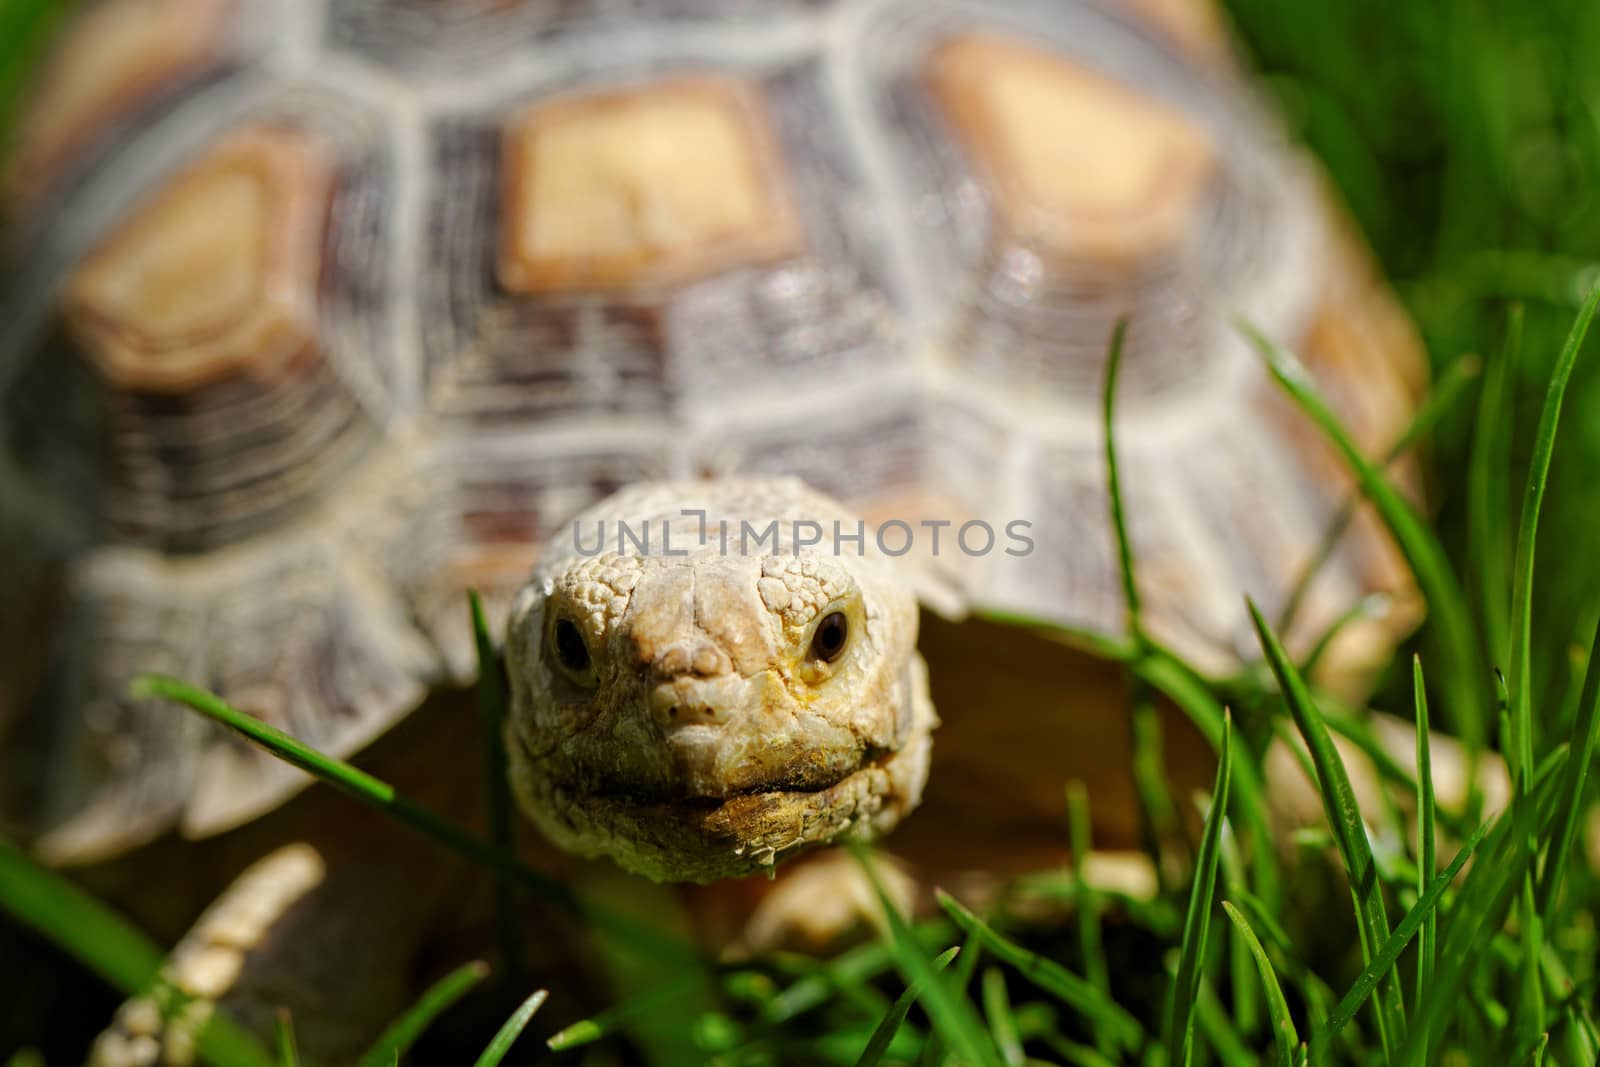 African Spurred Tortoise (Geochelone sulcata) in the garden